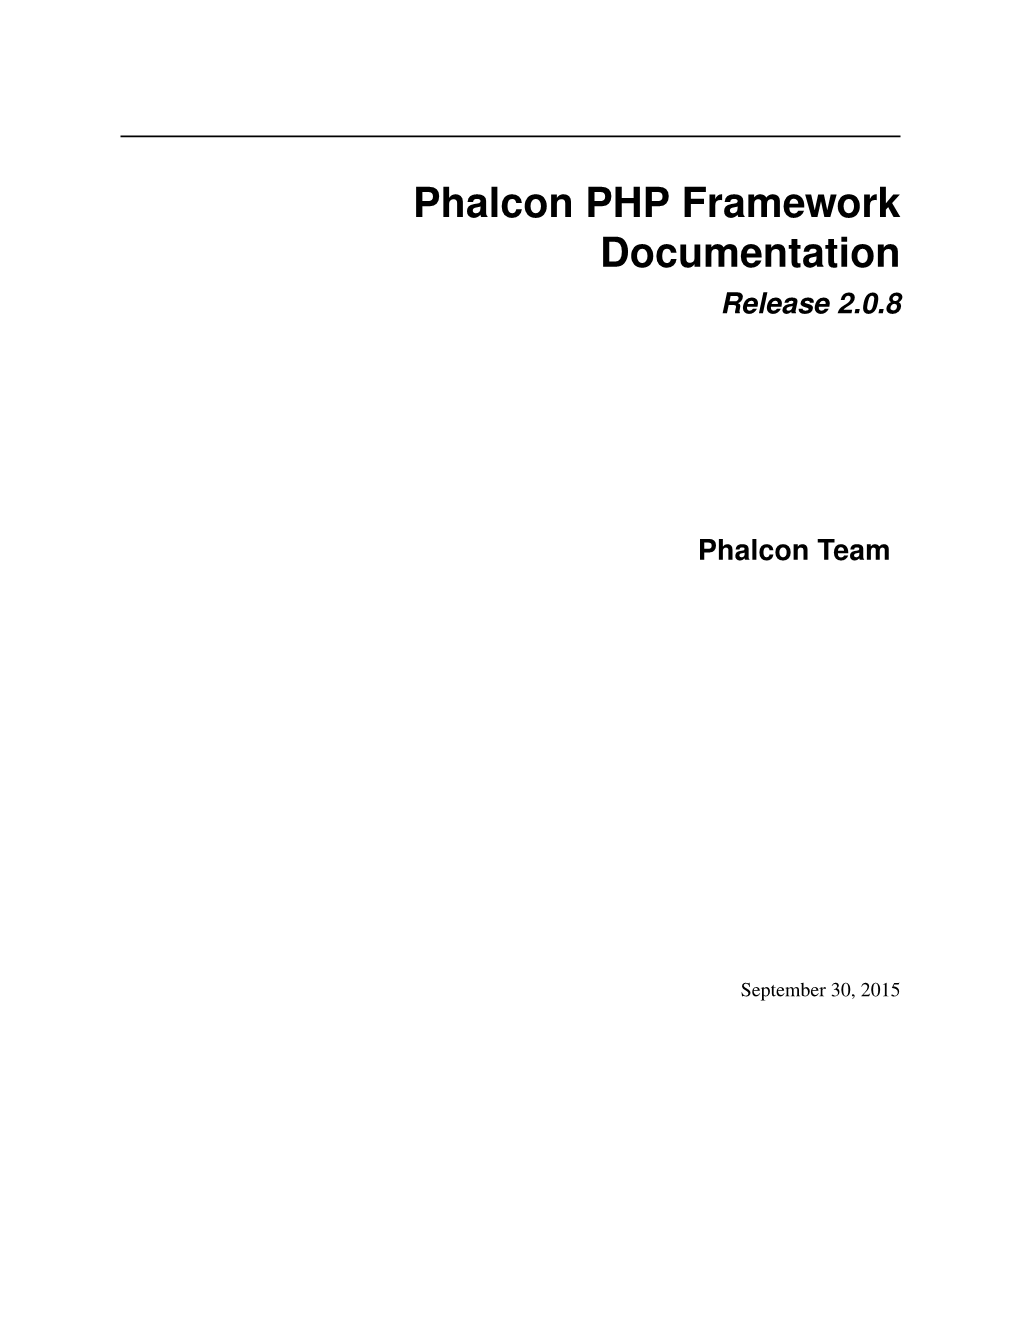 Phalcon PHP Framework Documentation Release 2.0.8